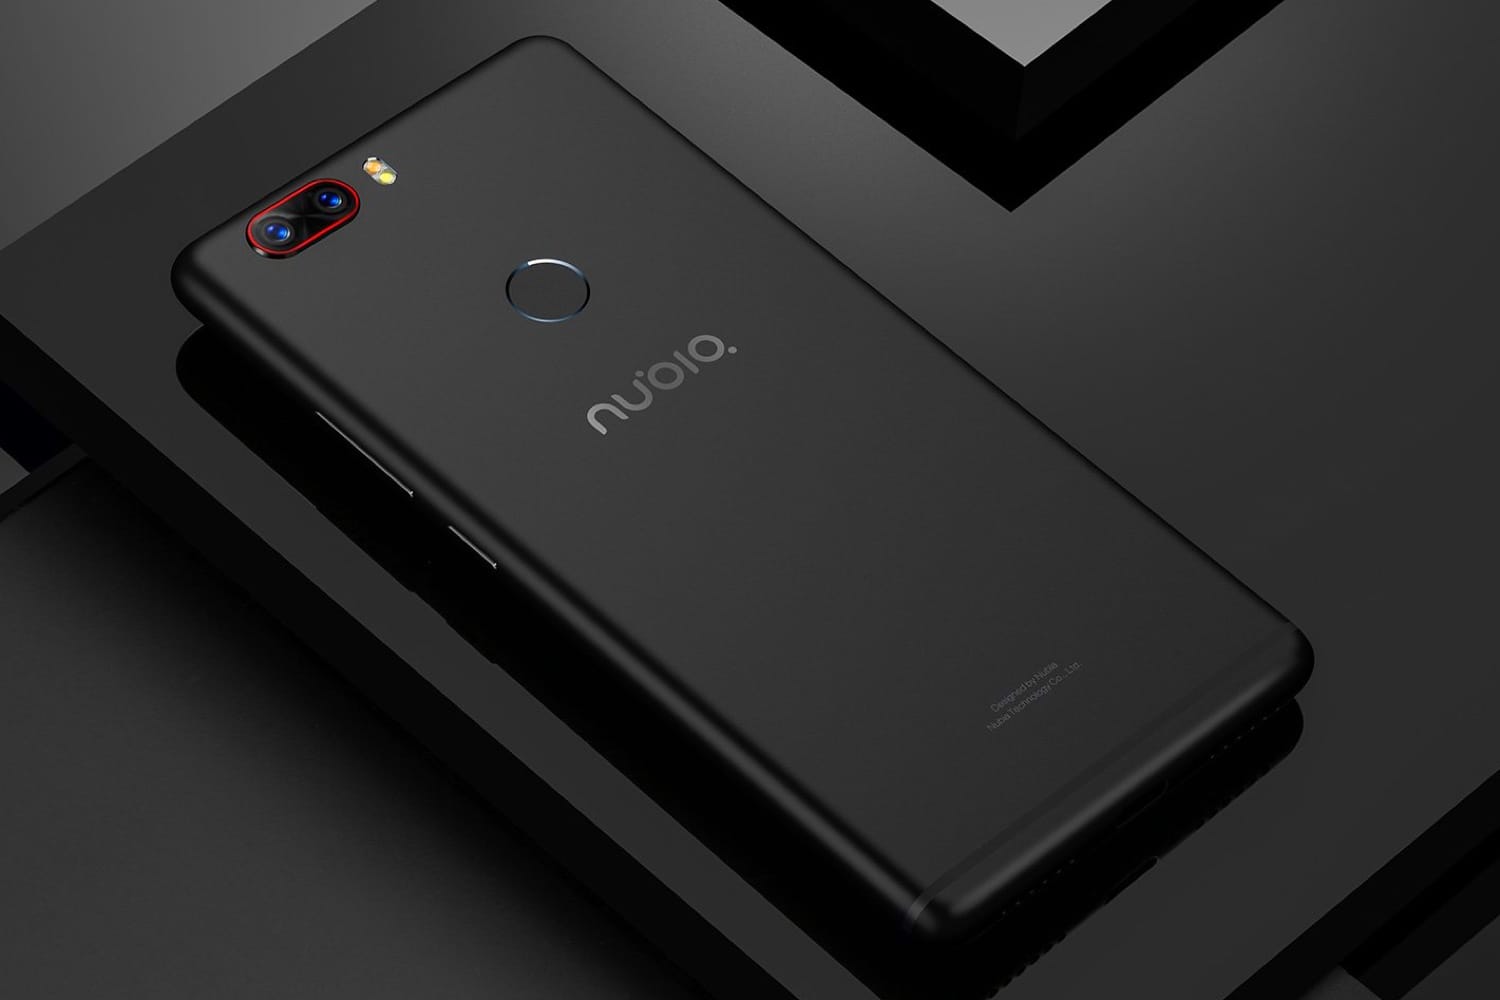 Bezramochnиy Нубія Z19 з Android Oreo - найпотужніший смартфон у світі вперше на зображеннях